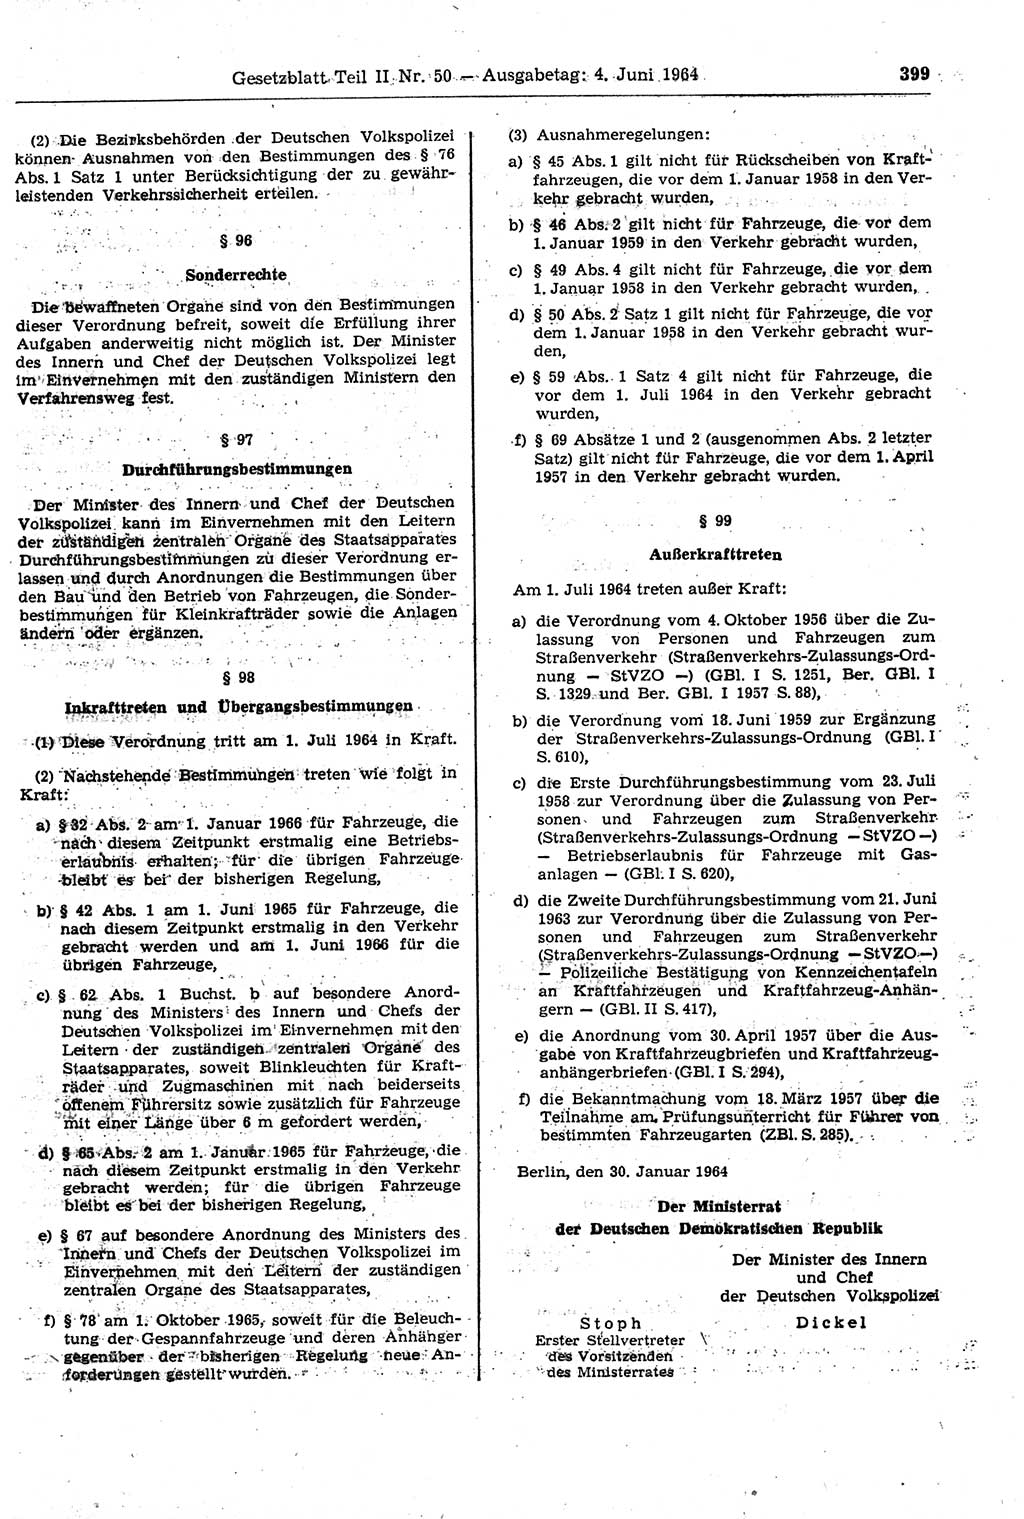 Gesetzblatt (GBl.) der Deutschen Demokratischen Republik (DDR) Teil ⅠⅠ 1964, Seite 399 (GBl. DDR ⅠⅠ 1964, S. 399)